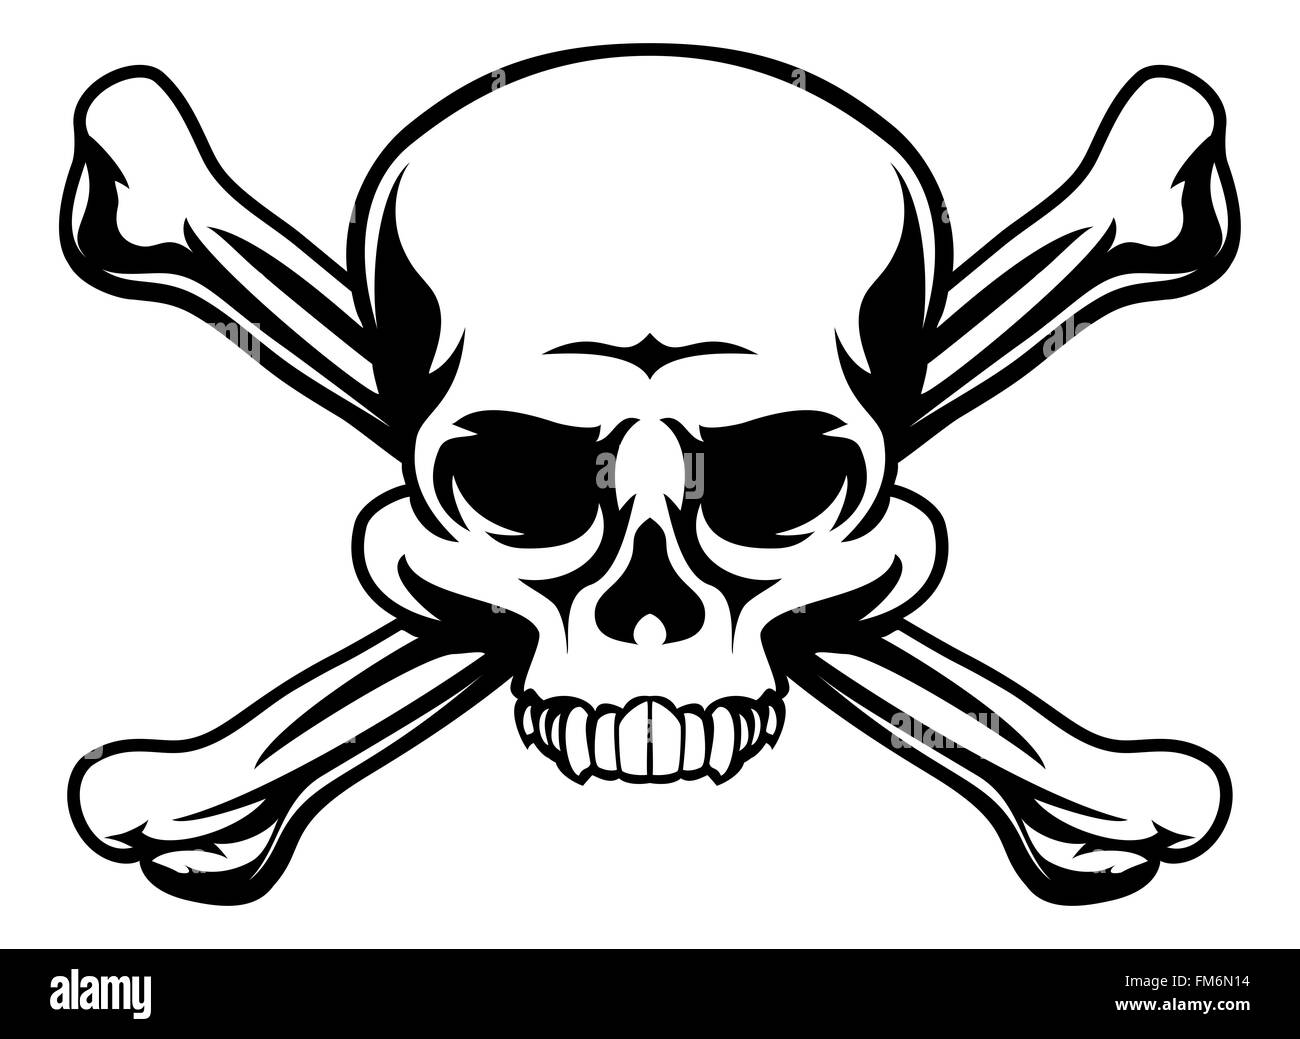 Une tête de mort comme une icône illustration pirates Jolly roger sign Banque D'Images